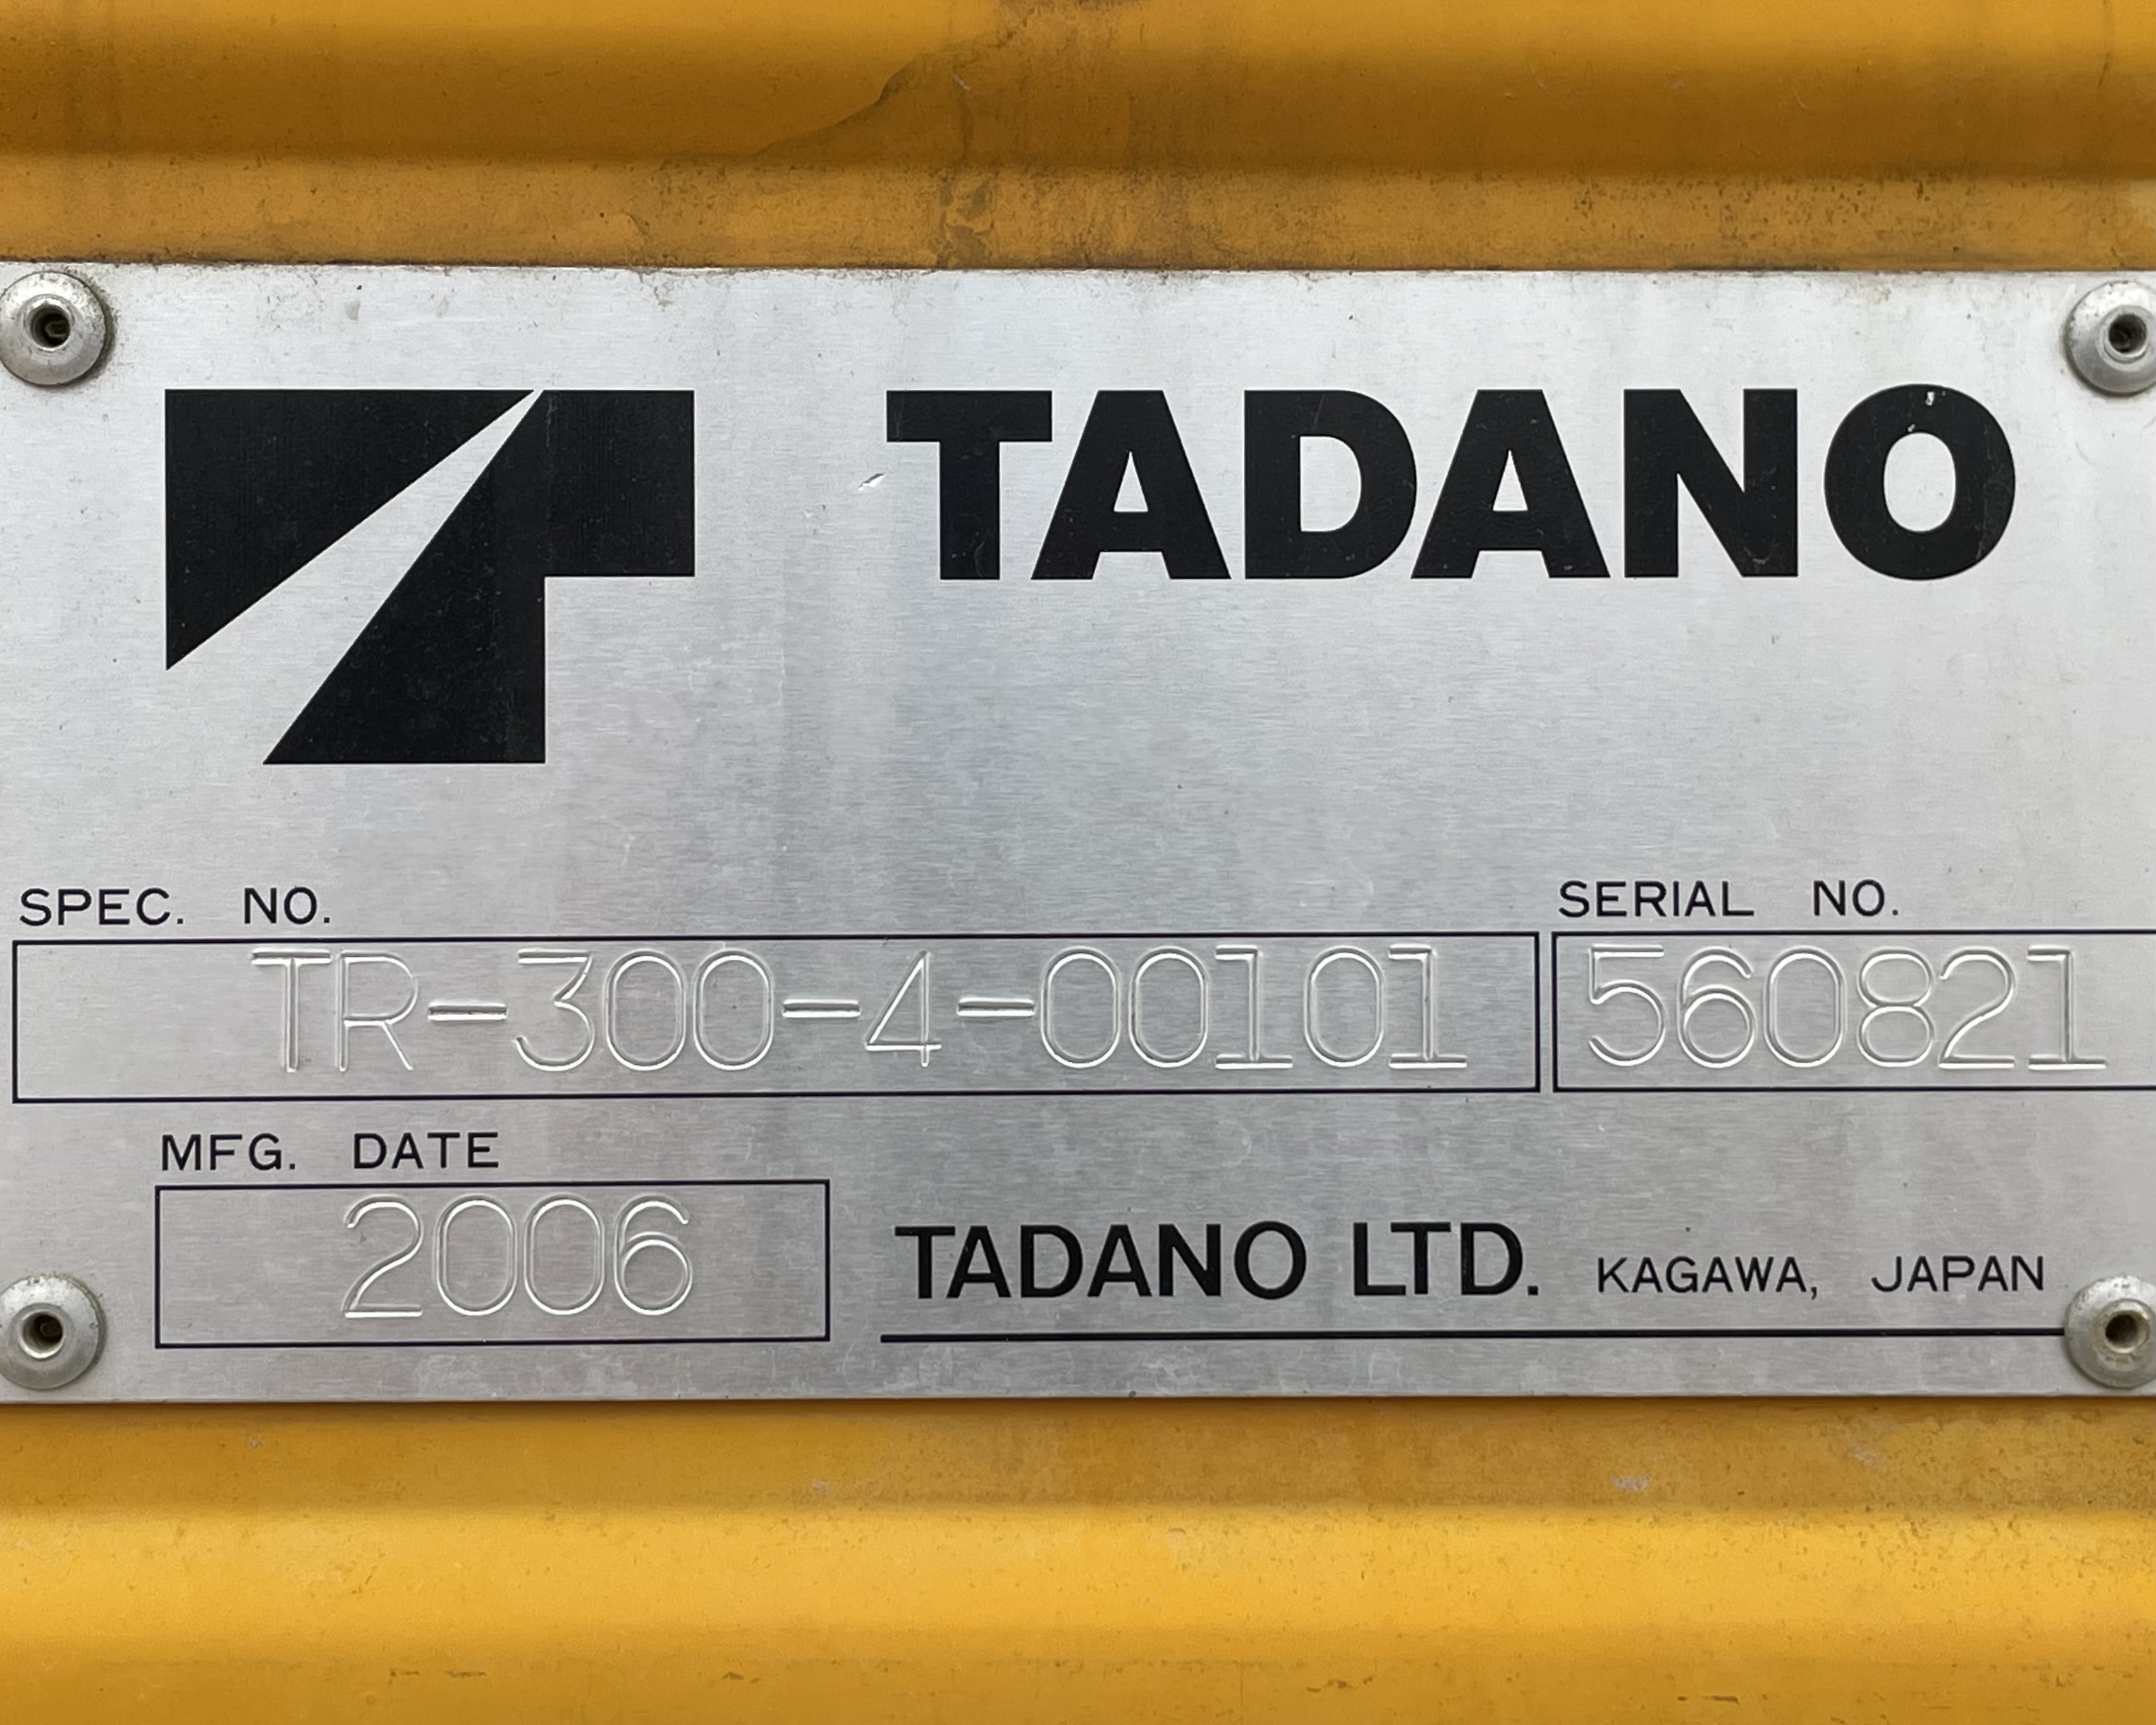 Tadano TR-300